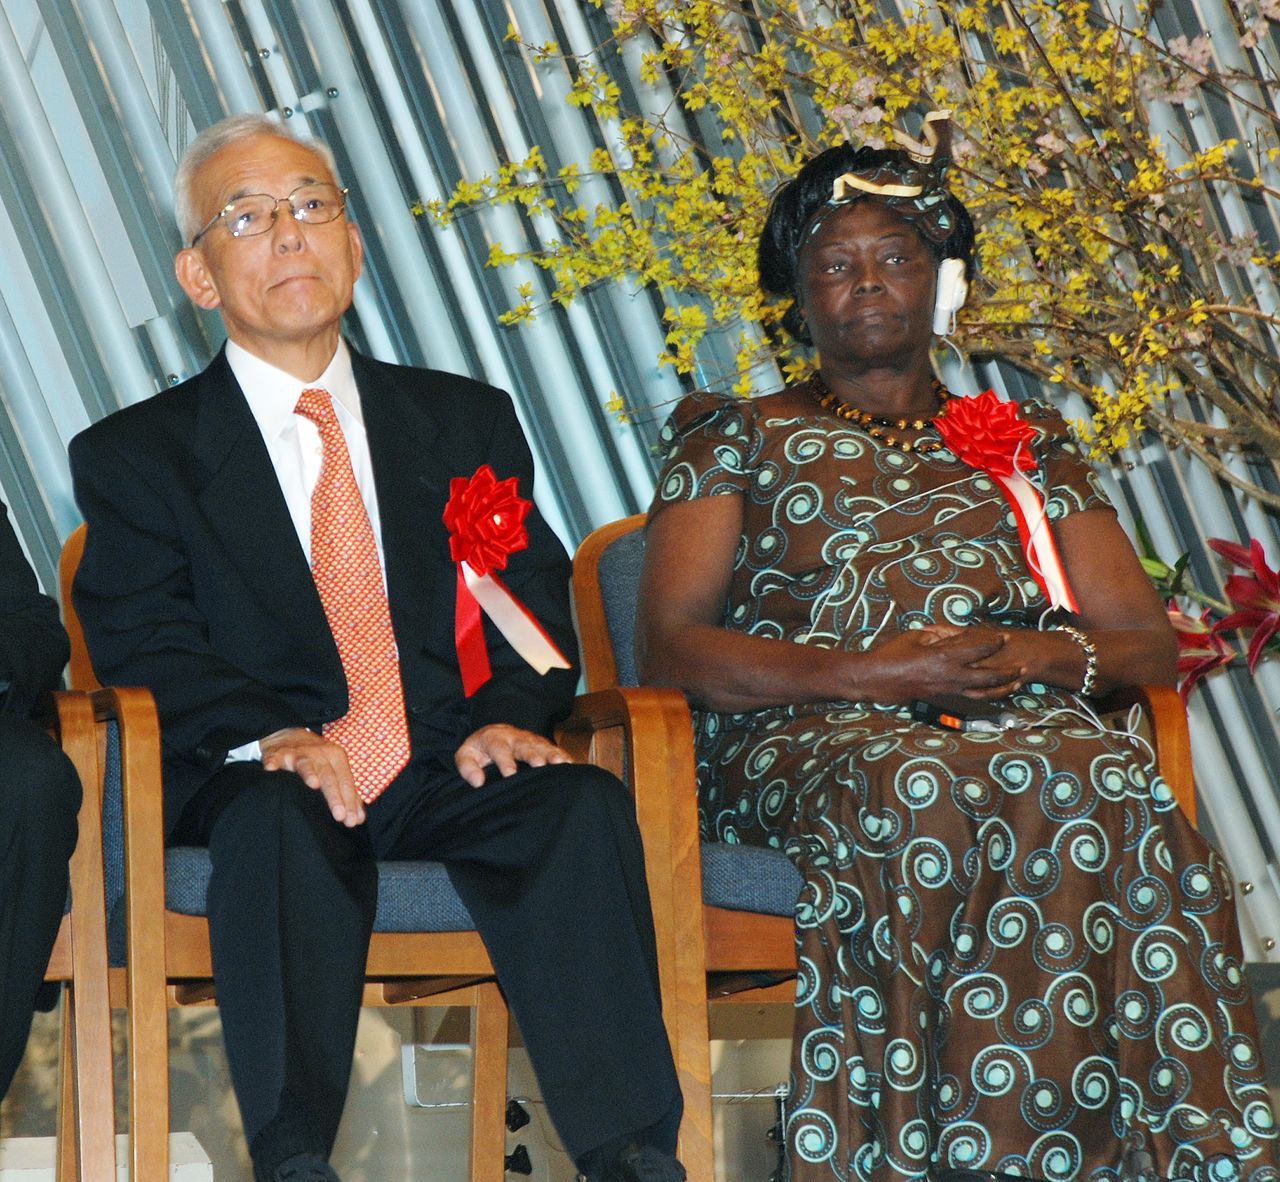 سيوكورو مانابى، على اليسار، يجلس بجوار الكينية وانغاري ماثاي، الحائزة على جائزة نوبل للسلام في عام 2004، في أحد الاحتفالات التي أقيمت في فبراير/ شباط 2010 في قاعة مشاهير الأرض بمدينة كيوتو. (جيجي برس)